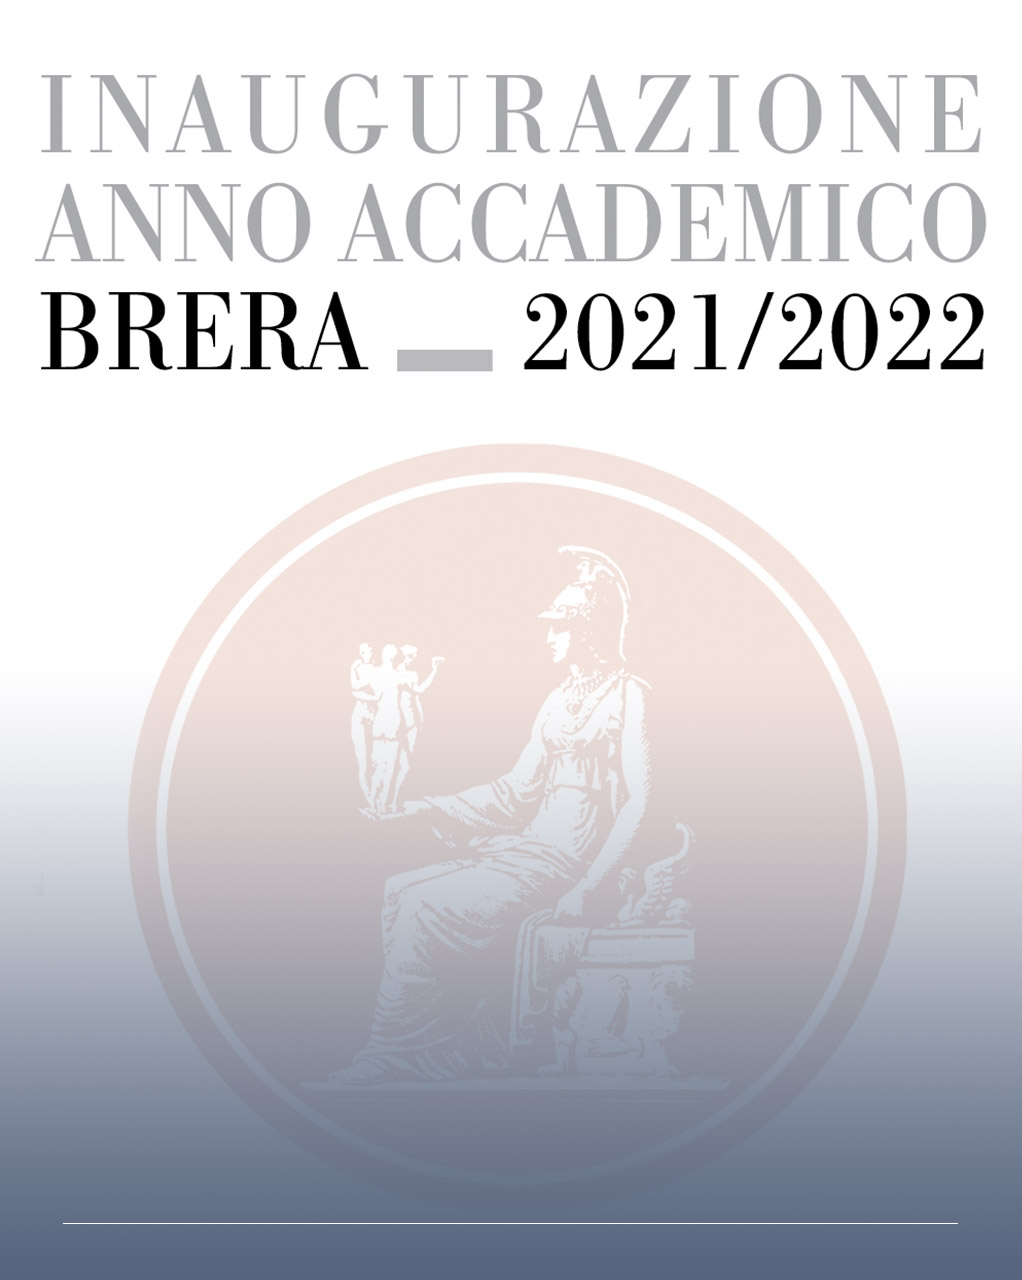 immagine istituzionale con logo dell'Accademia di Brera e scritta inaugurazione anno accademico 2021/2022